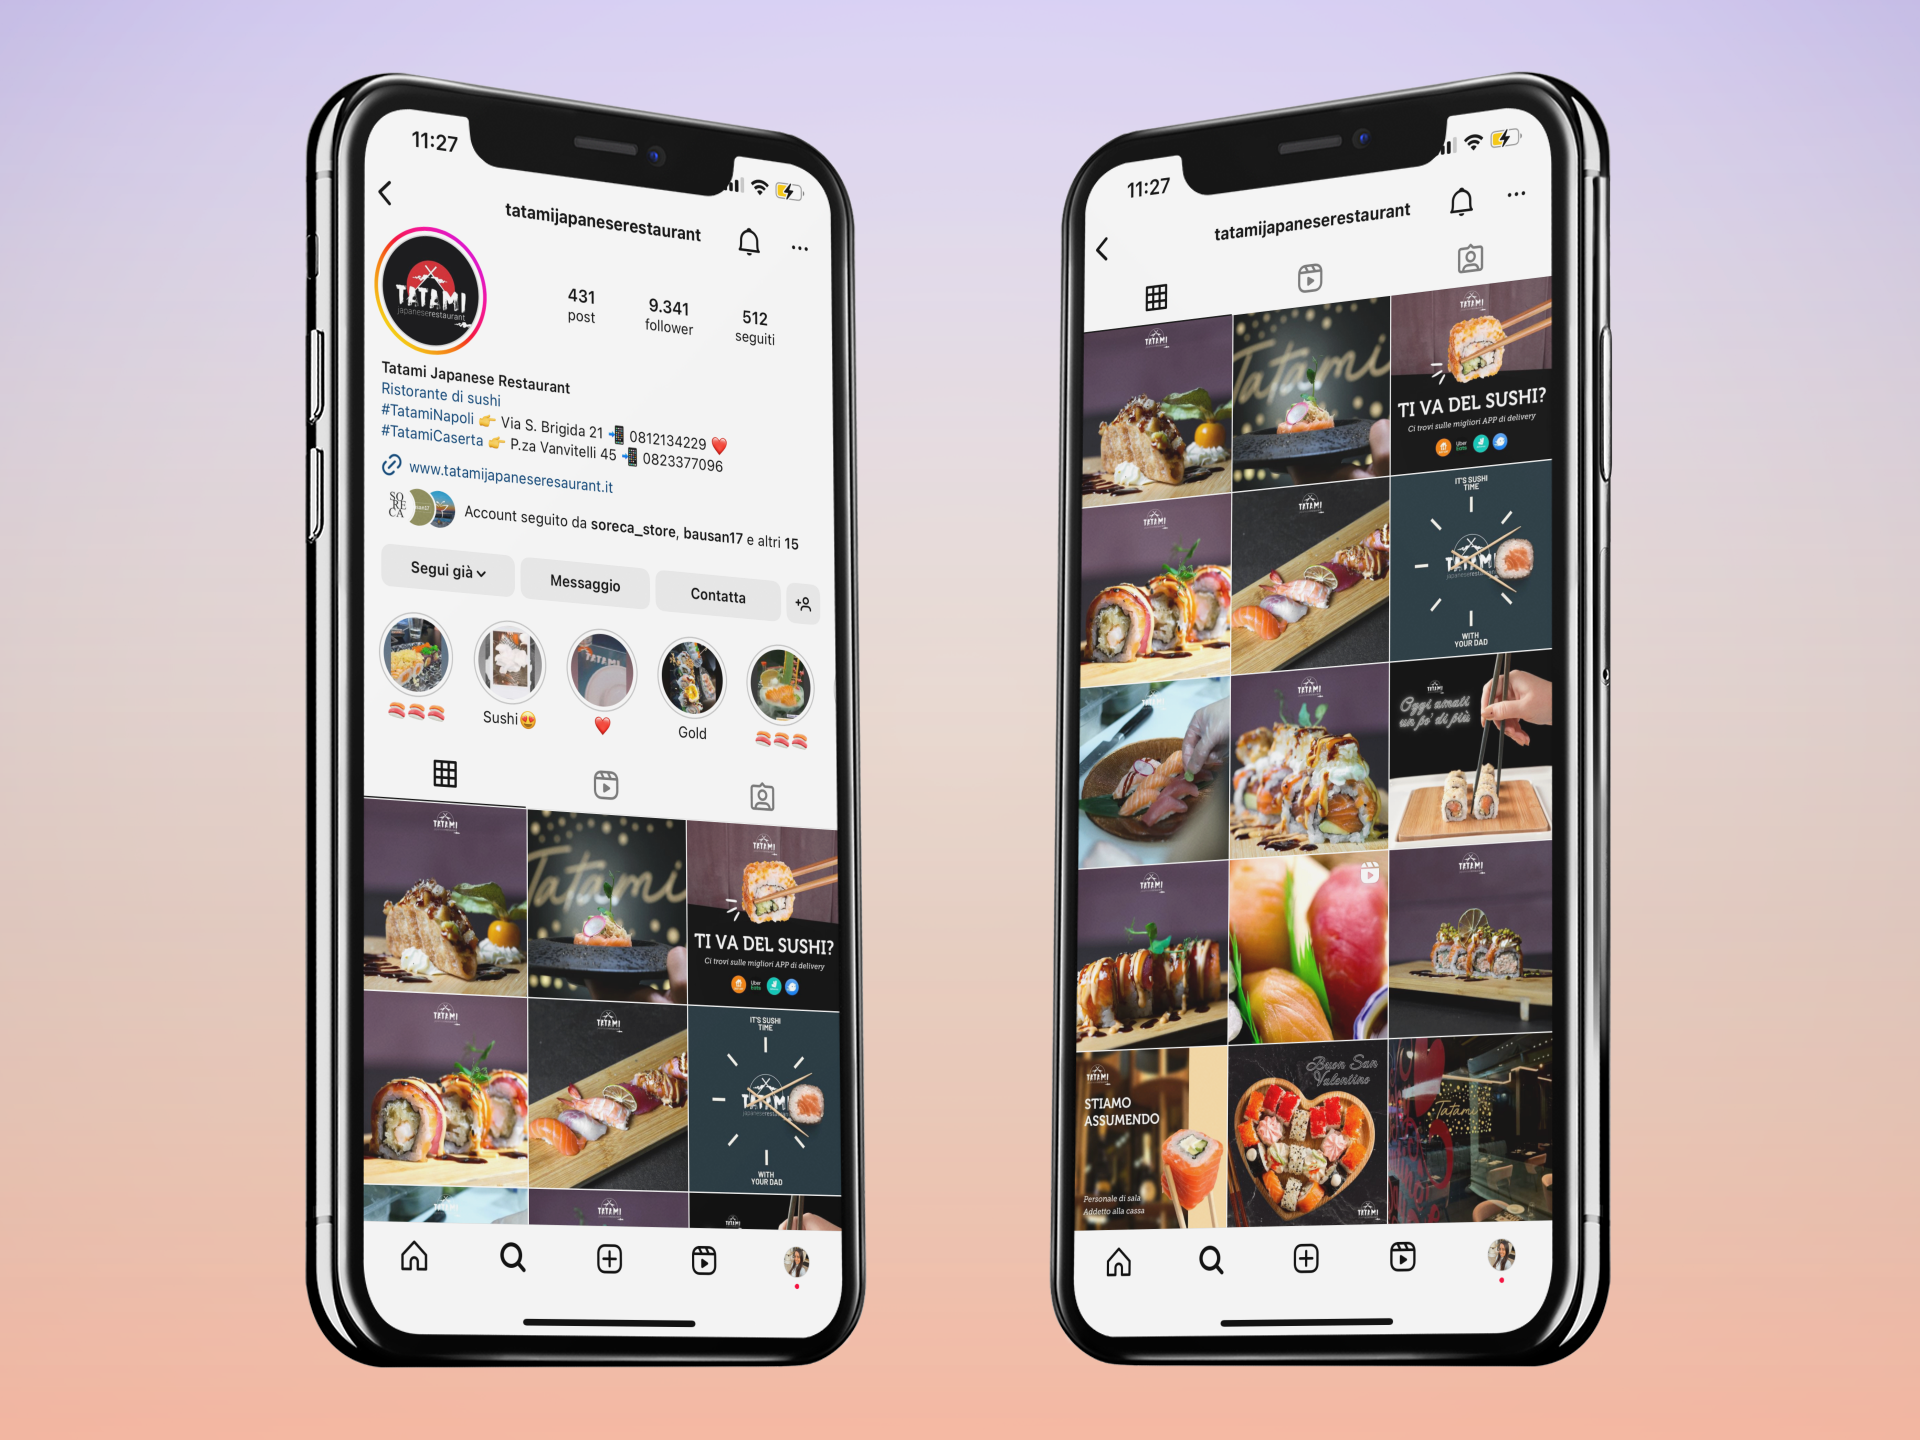 tatami japanese restaurant social media marketing